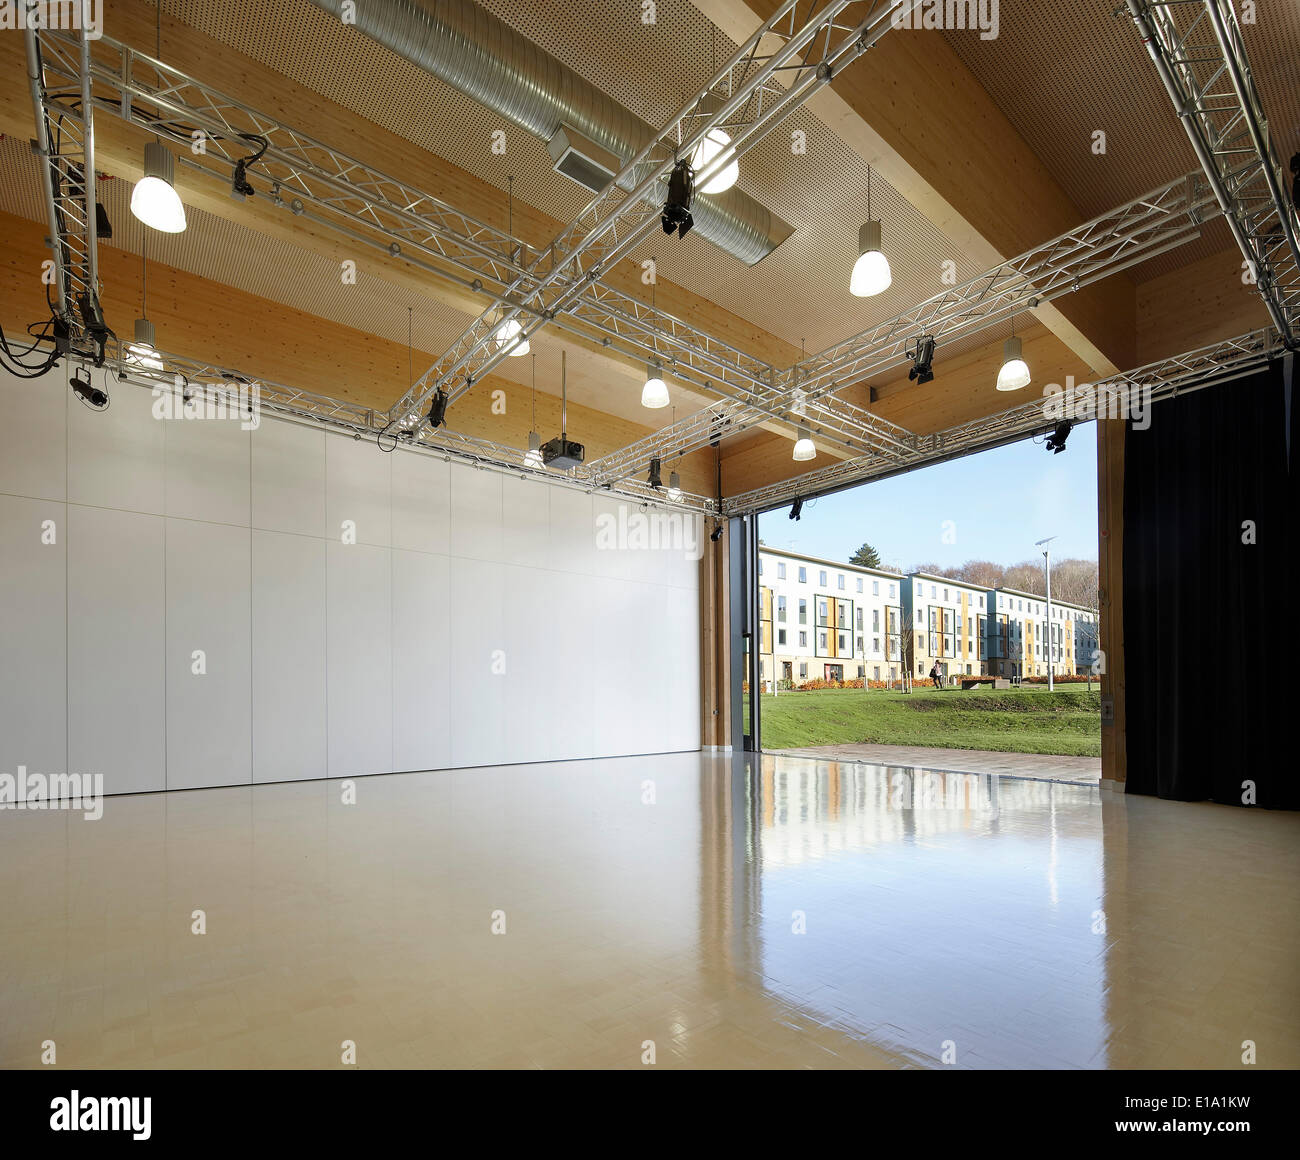 Lancaster Institut pour l'Art Contemporain, Lancaster, Royaume-Uni. Architecte : Sheppard Robson, 2011. Banque D'Images